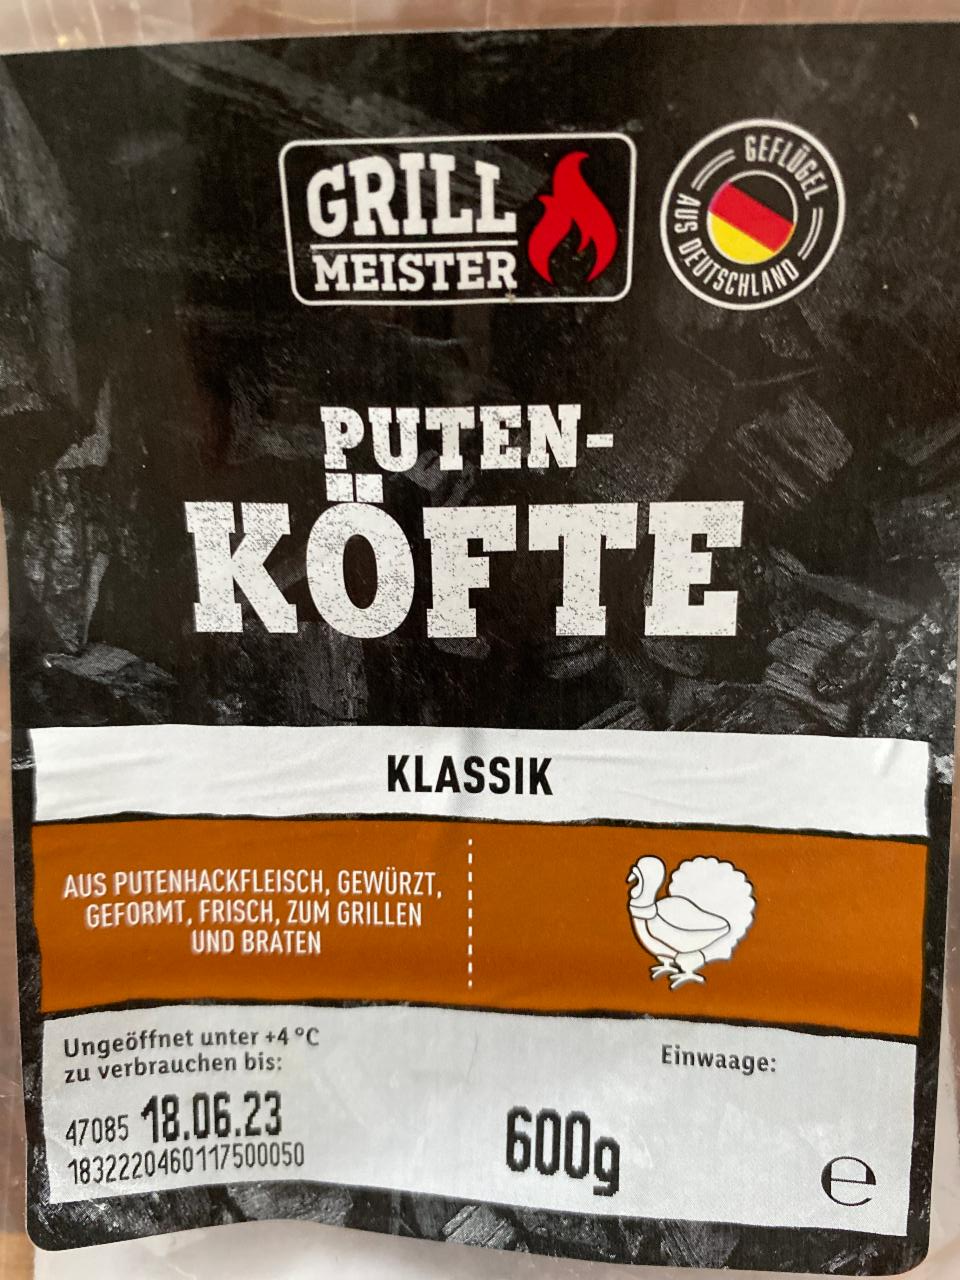 Puten-Köfte Klassik Grill - a nutriční kJ hodnoty kalorie, Meister